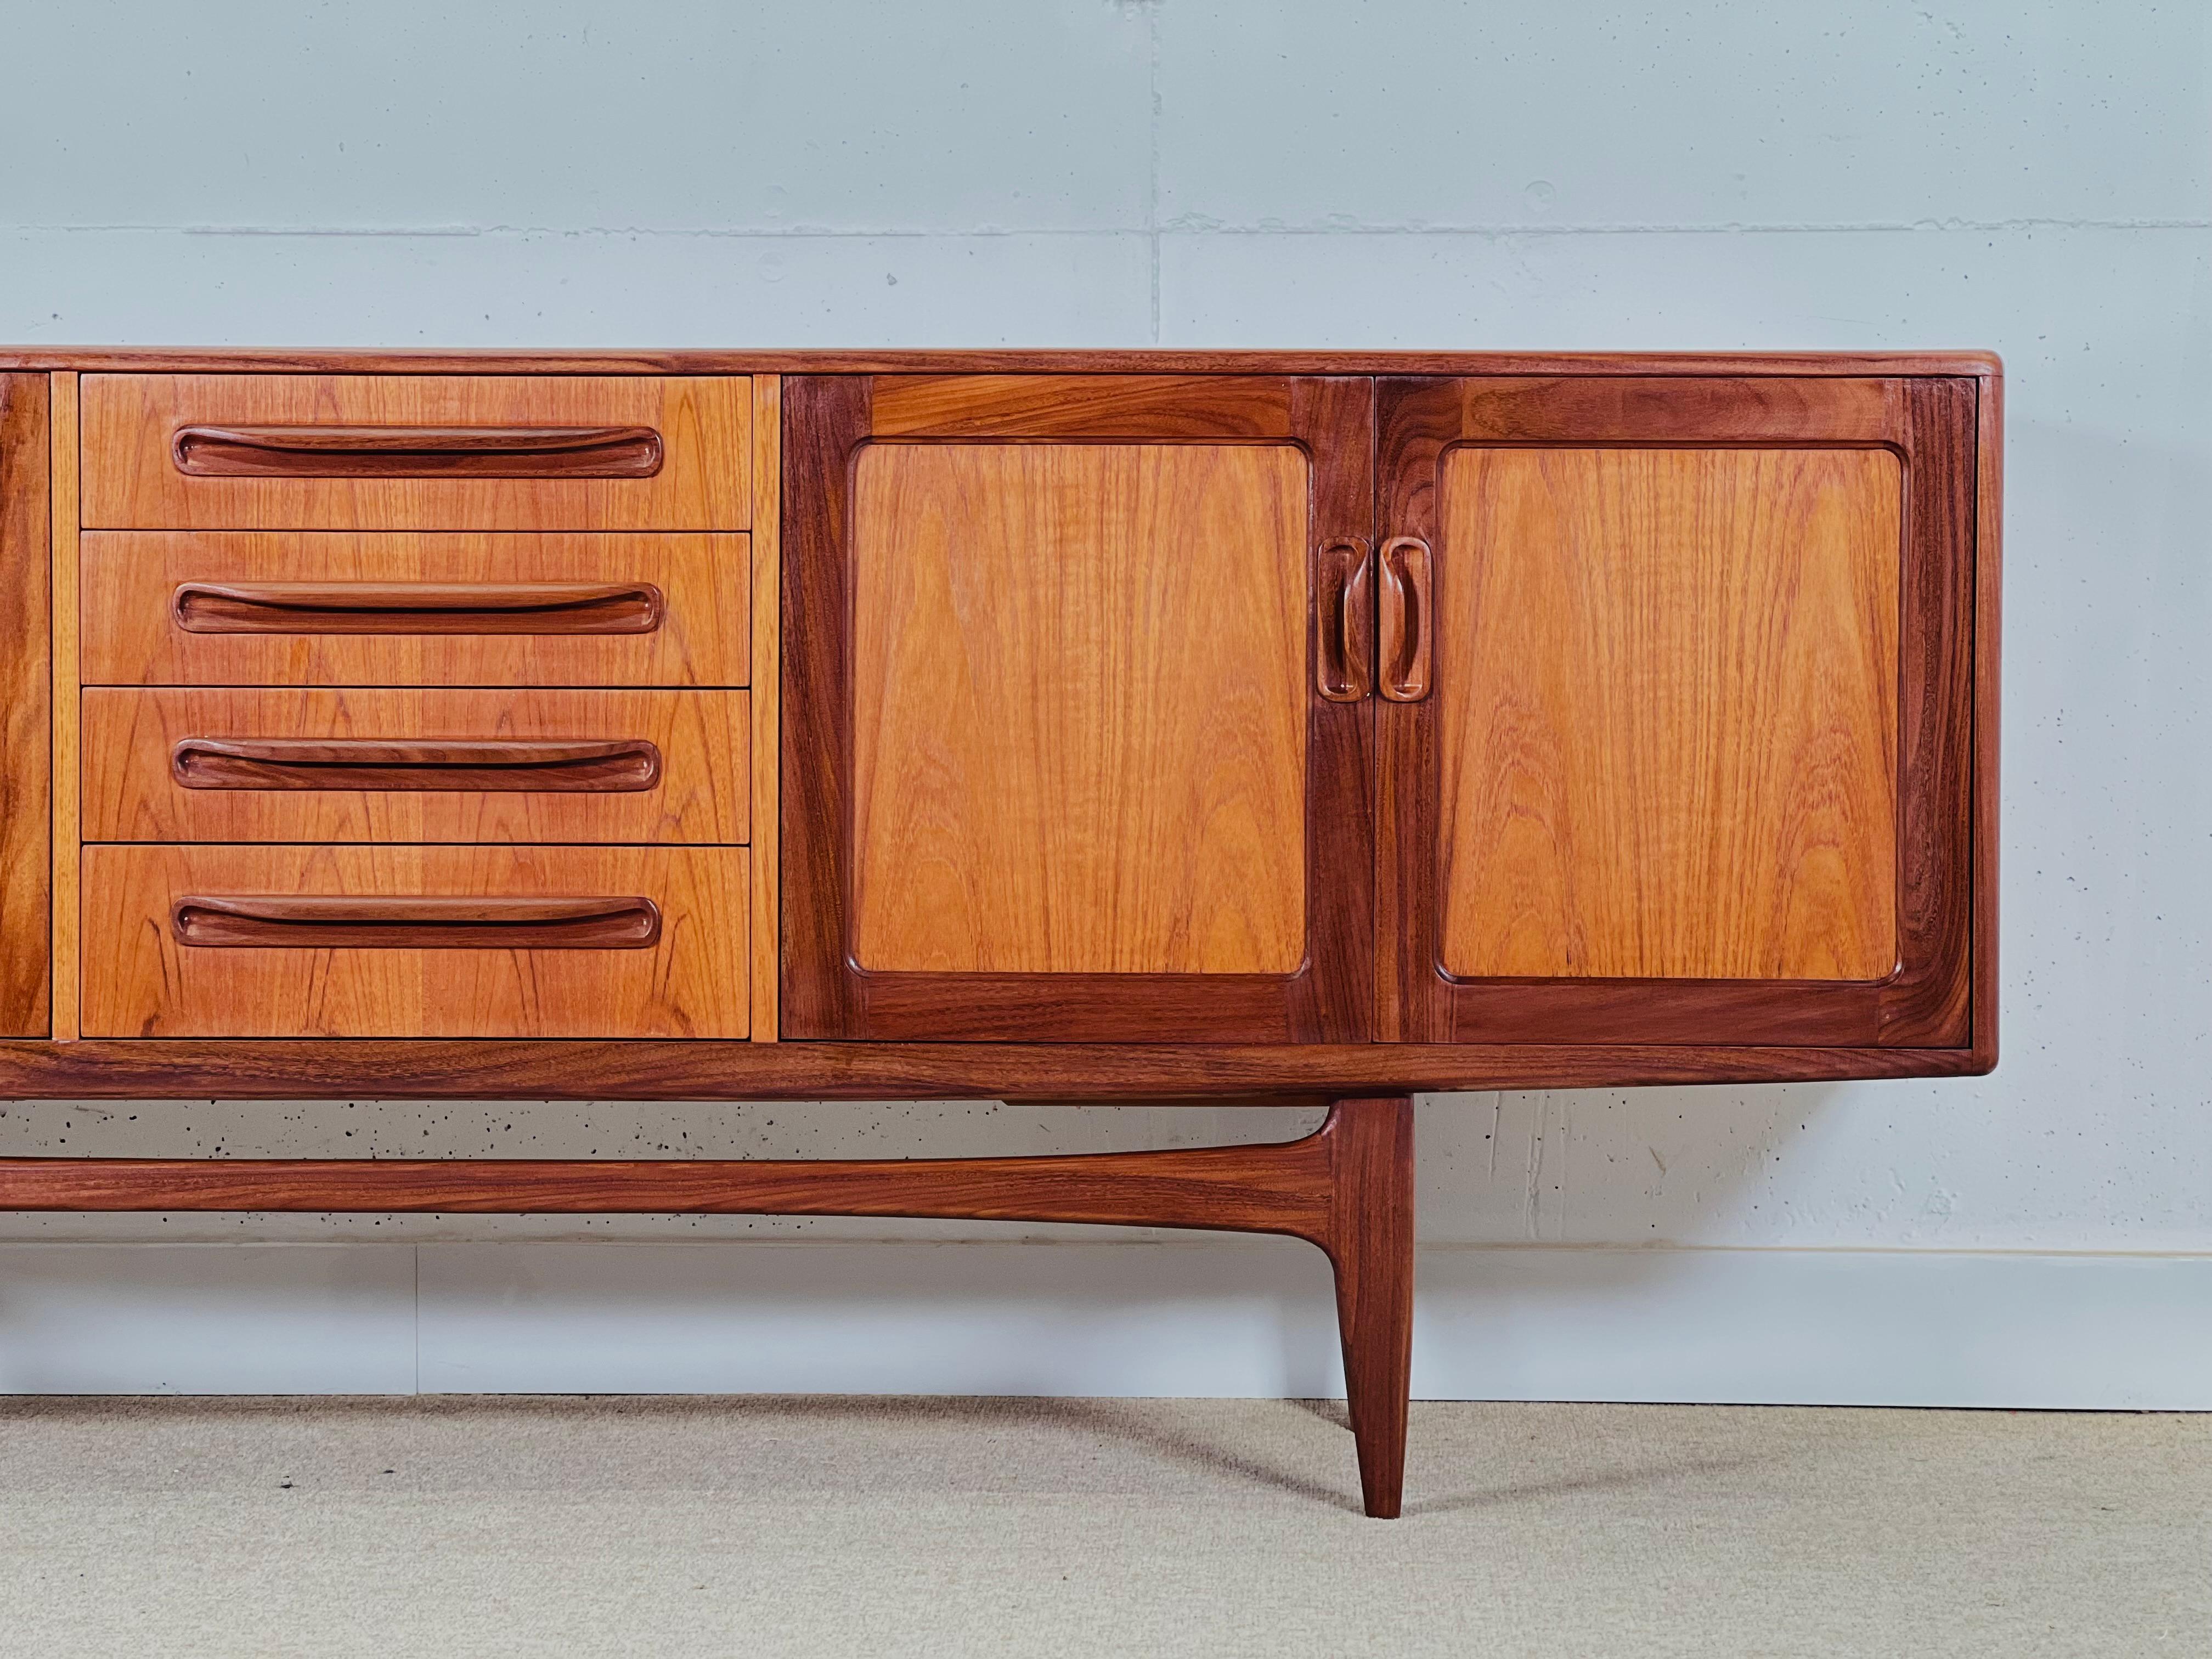 Buffet du milieu du siècle de GPlan, conçu par Victor Wilkins pour sa Collection Fresco dans les années 1960.

Le buffet est composé d'un module à 4 tiroirs au centre, à droite d'un meuble bar et à droite d'un meuble à deux portes. Fabriqué en teck